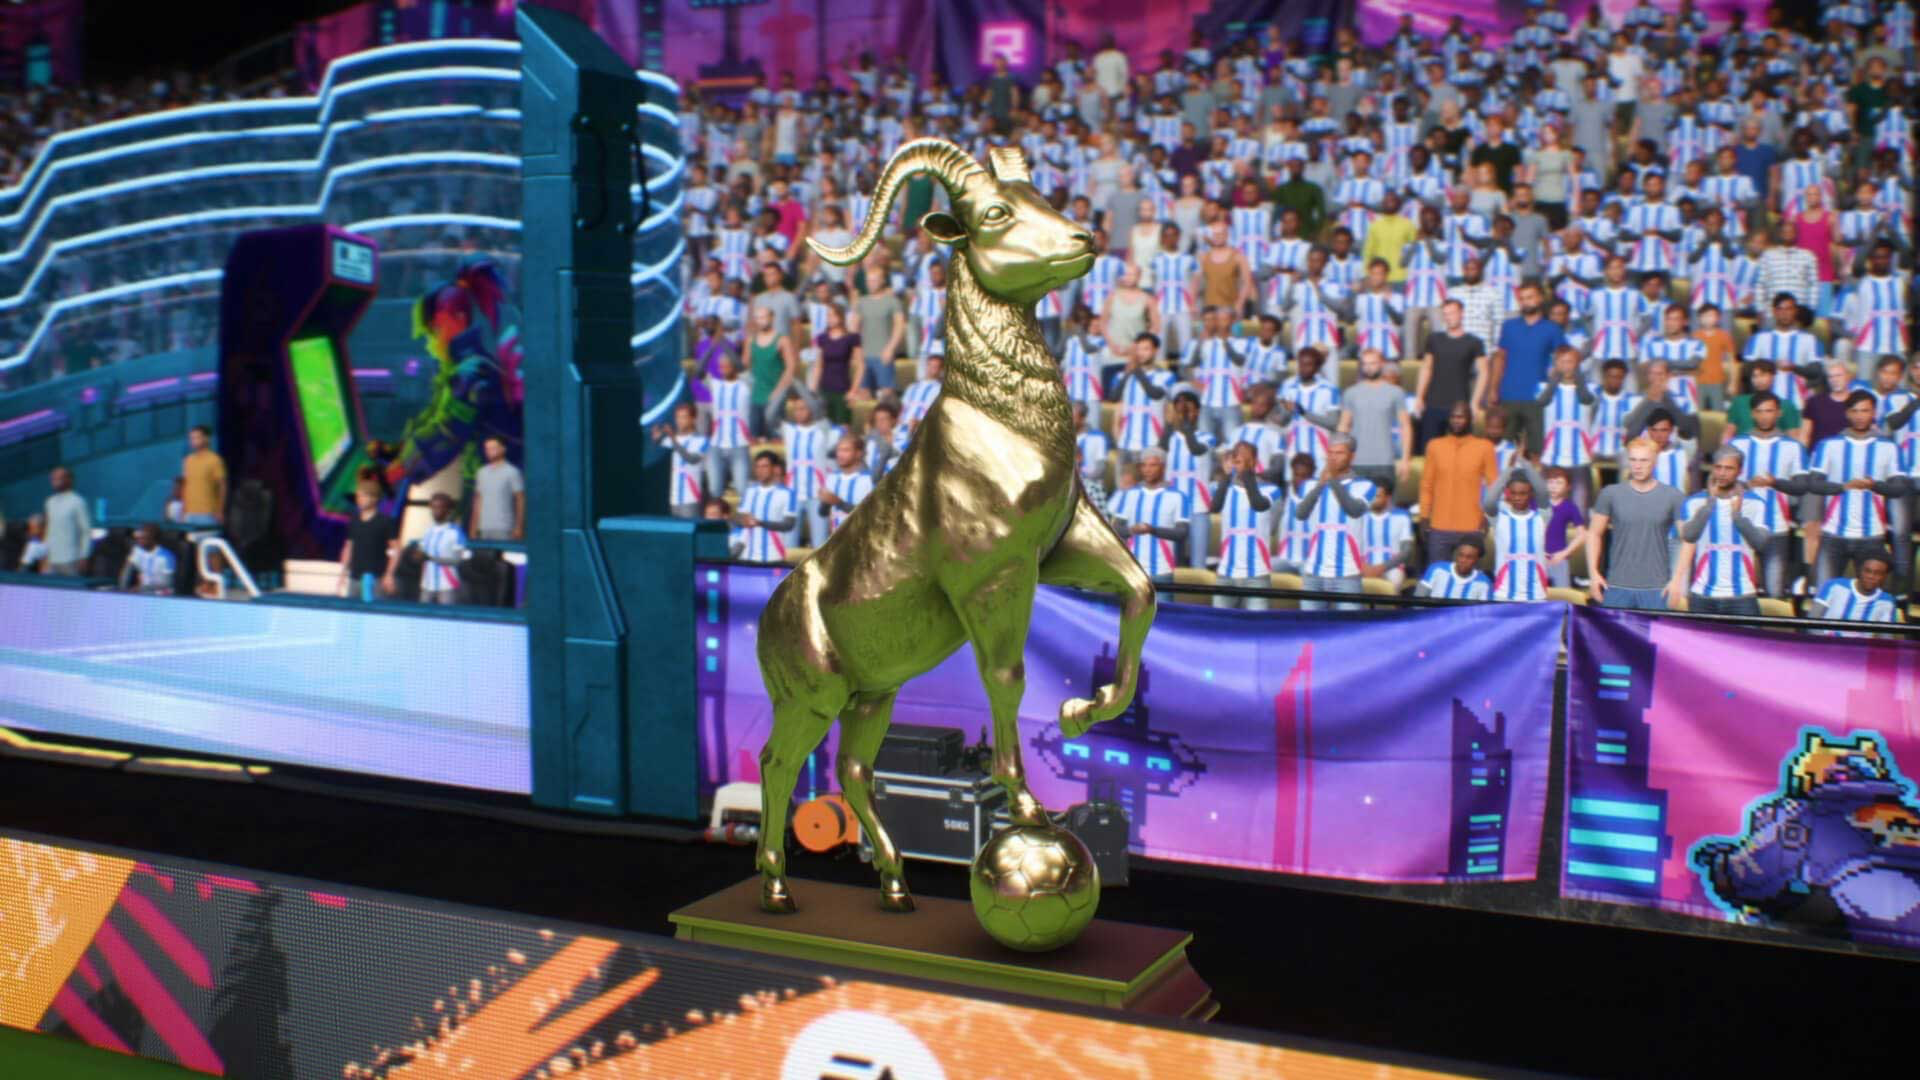 A FIFA 22 trophy